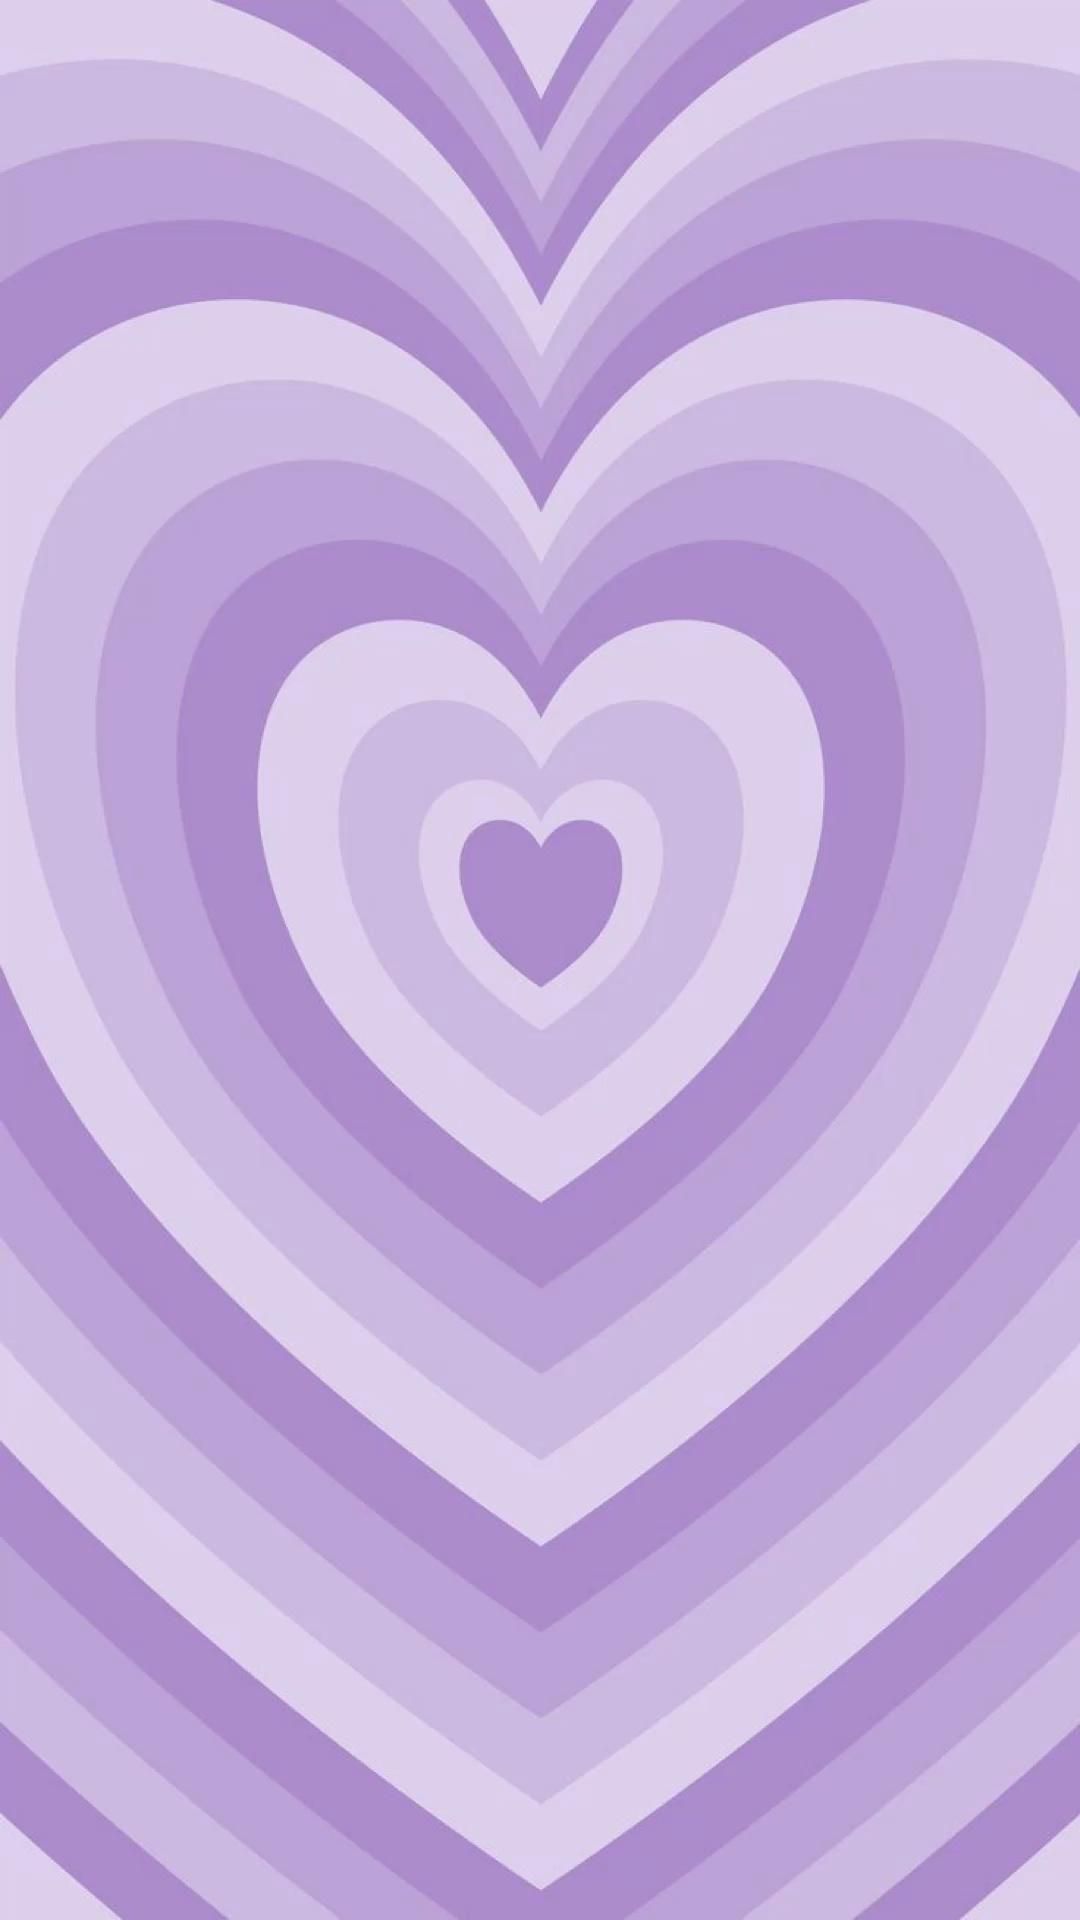 Những bức hình nền màu tím hình trái tim của chúng tôi sẽ giúp bạn thể hiện tình yêu và niềm đam mê của mình một cách tuyệt vời.